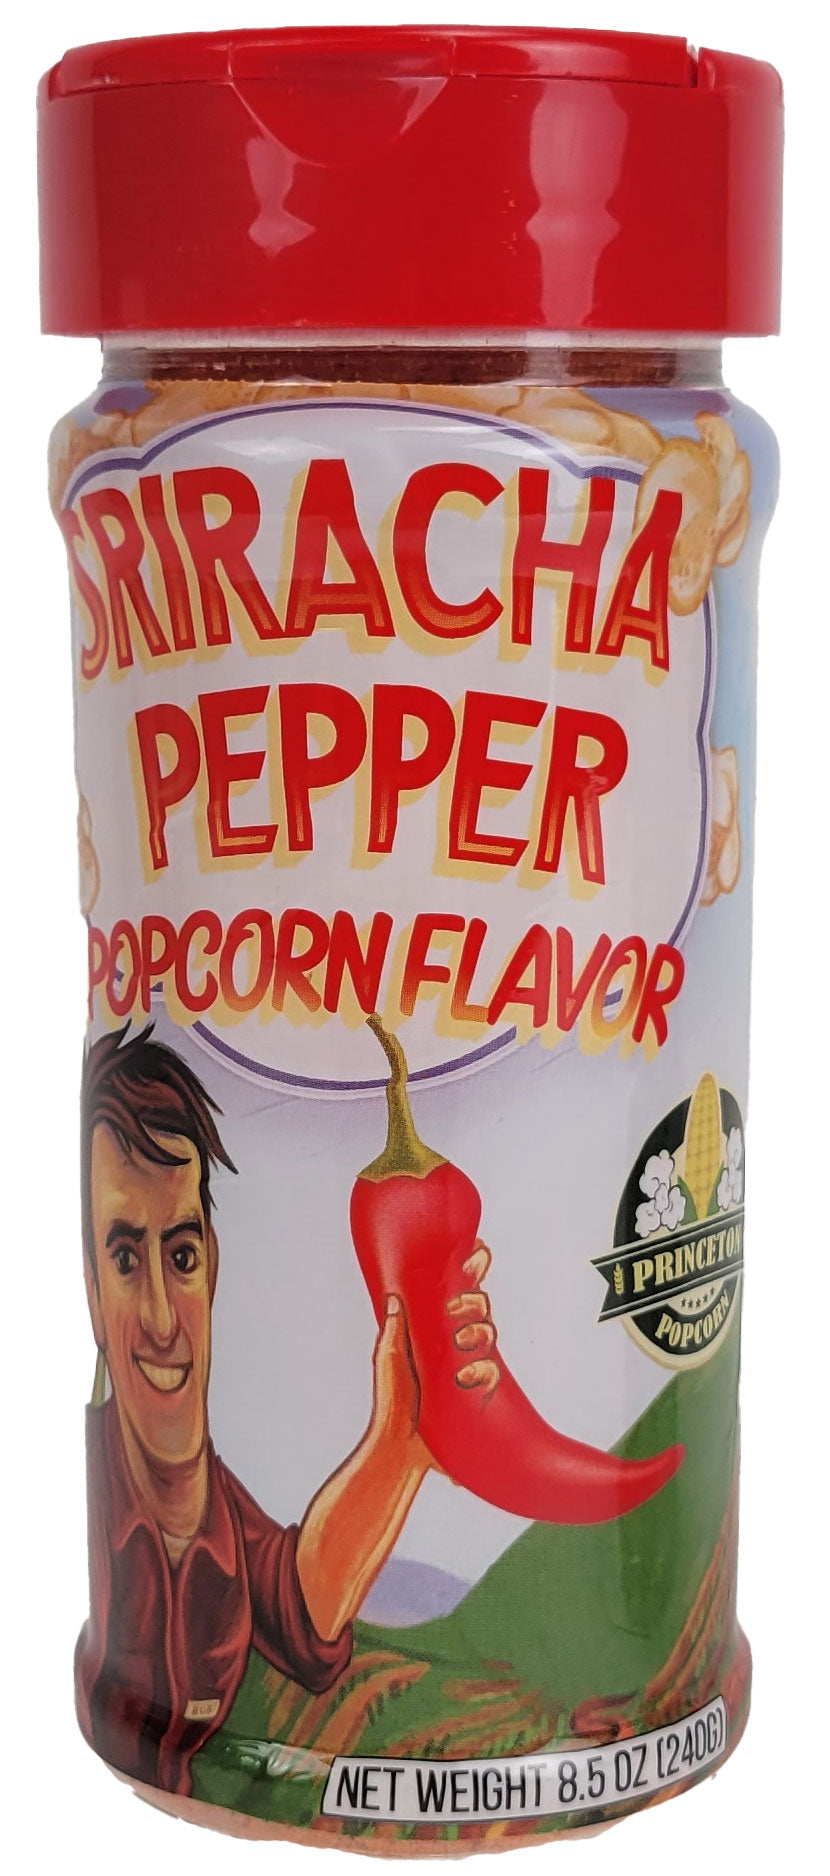 Tarro sabor palomitas de maíz con condimento de pimienta Sriracha